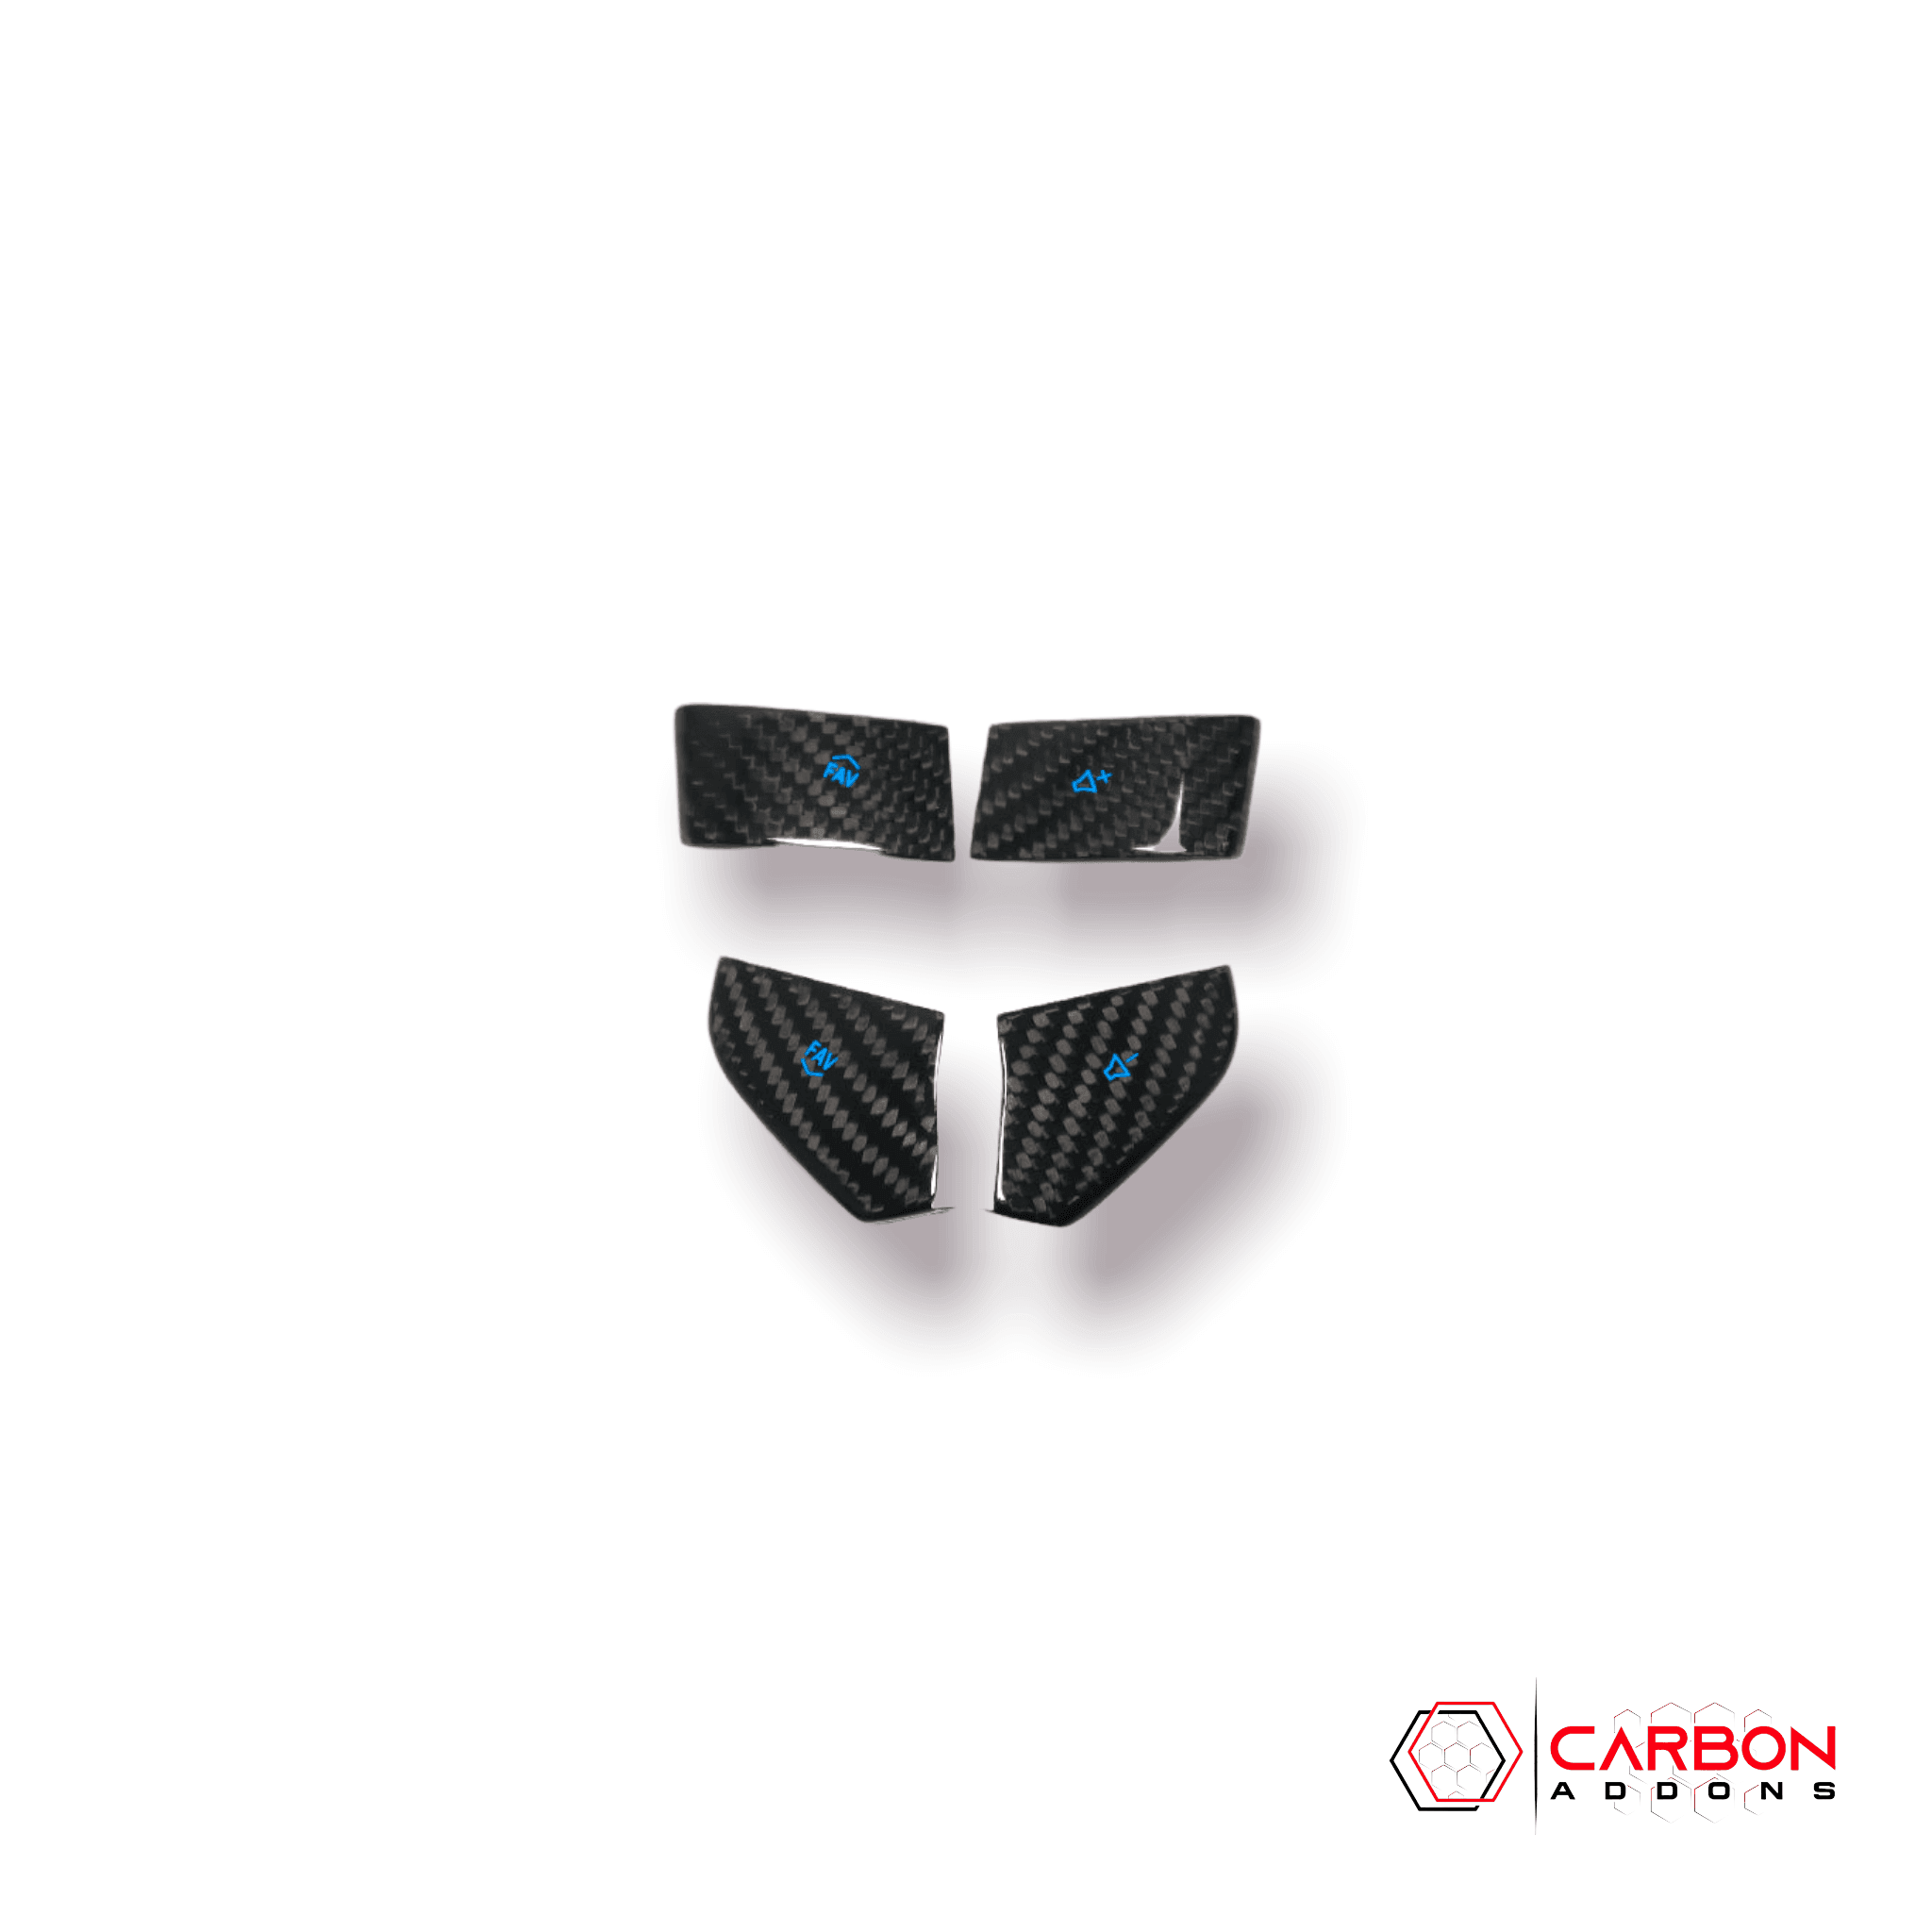 4pcs Carbon Fiber Steering Wheel Volume Button Covers | Chevy C8 Corvette - carbonaddons Carbon Fiber Parts, Accessories, Upgrades, Mods